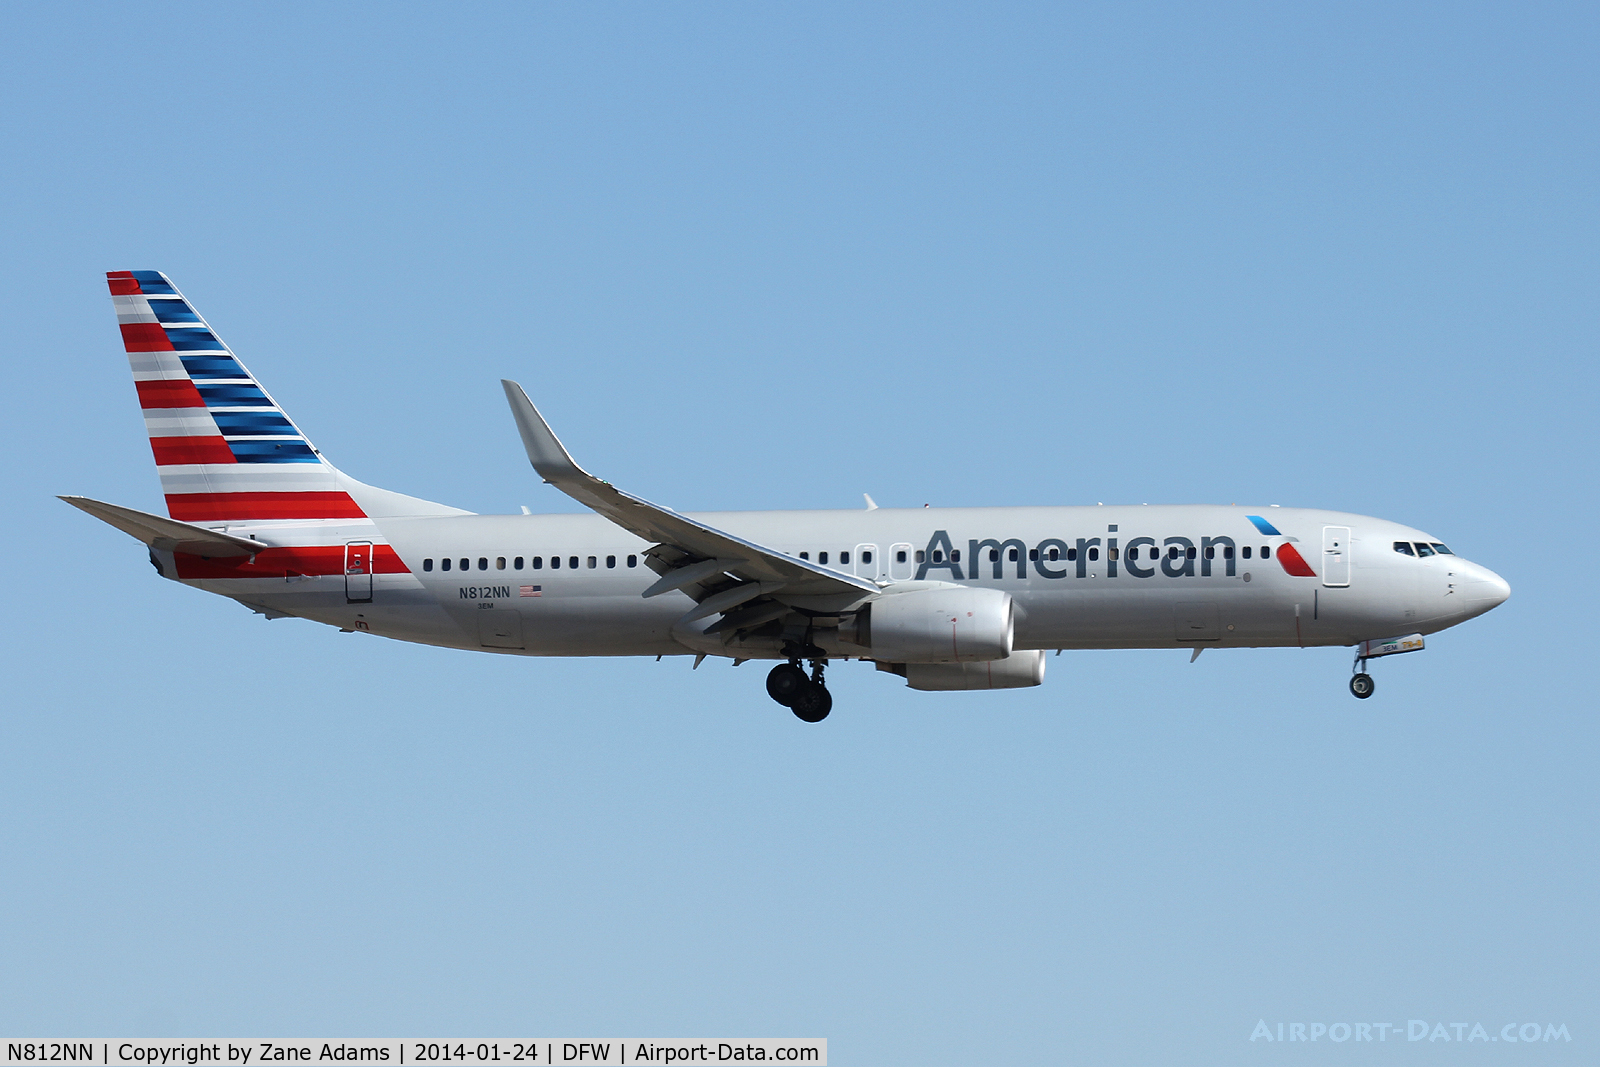 N812NN, 2009 Boeing 737-823 C/N 33520, American Airlines at DFW Airport